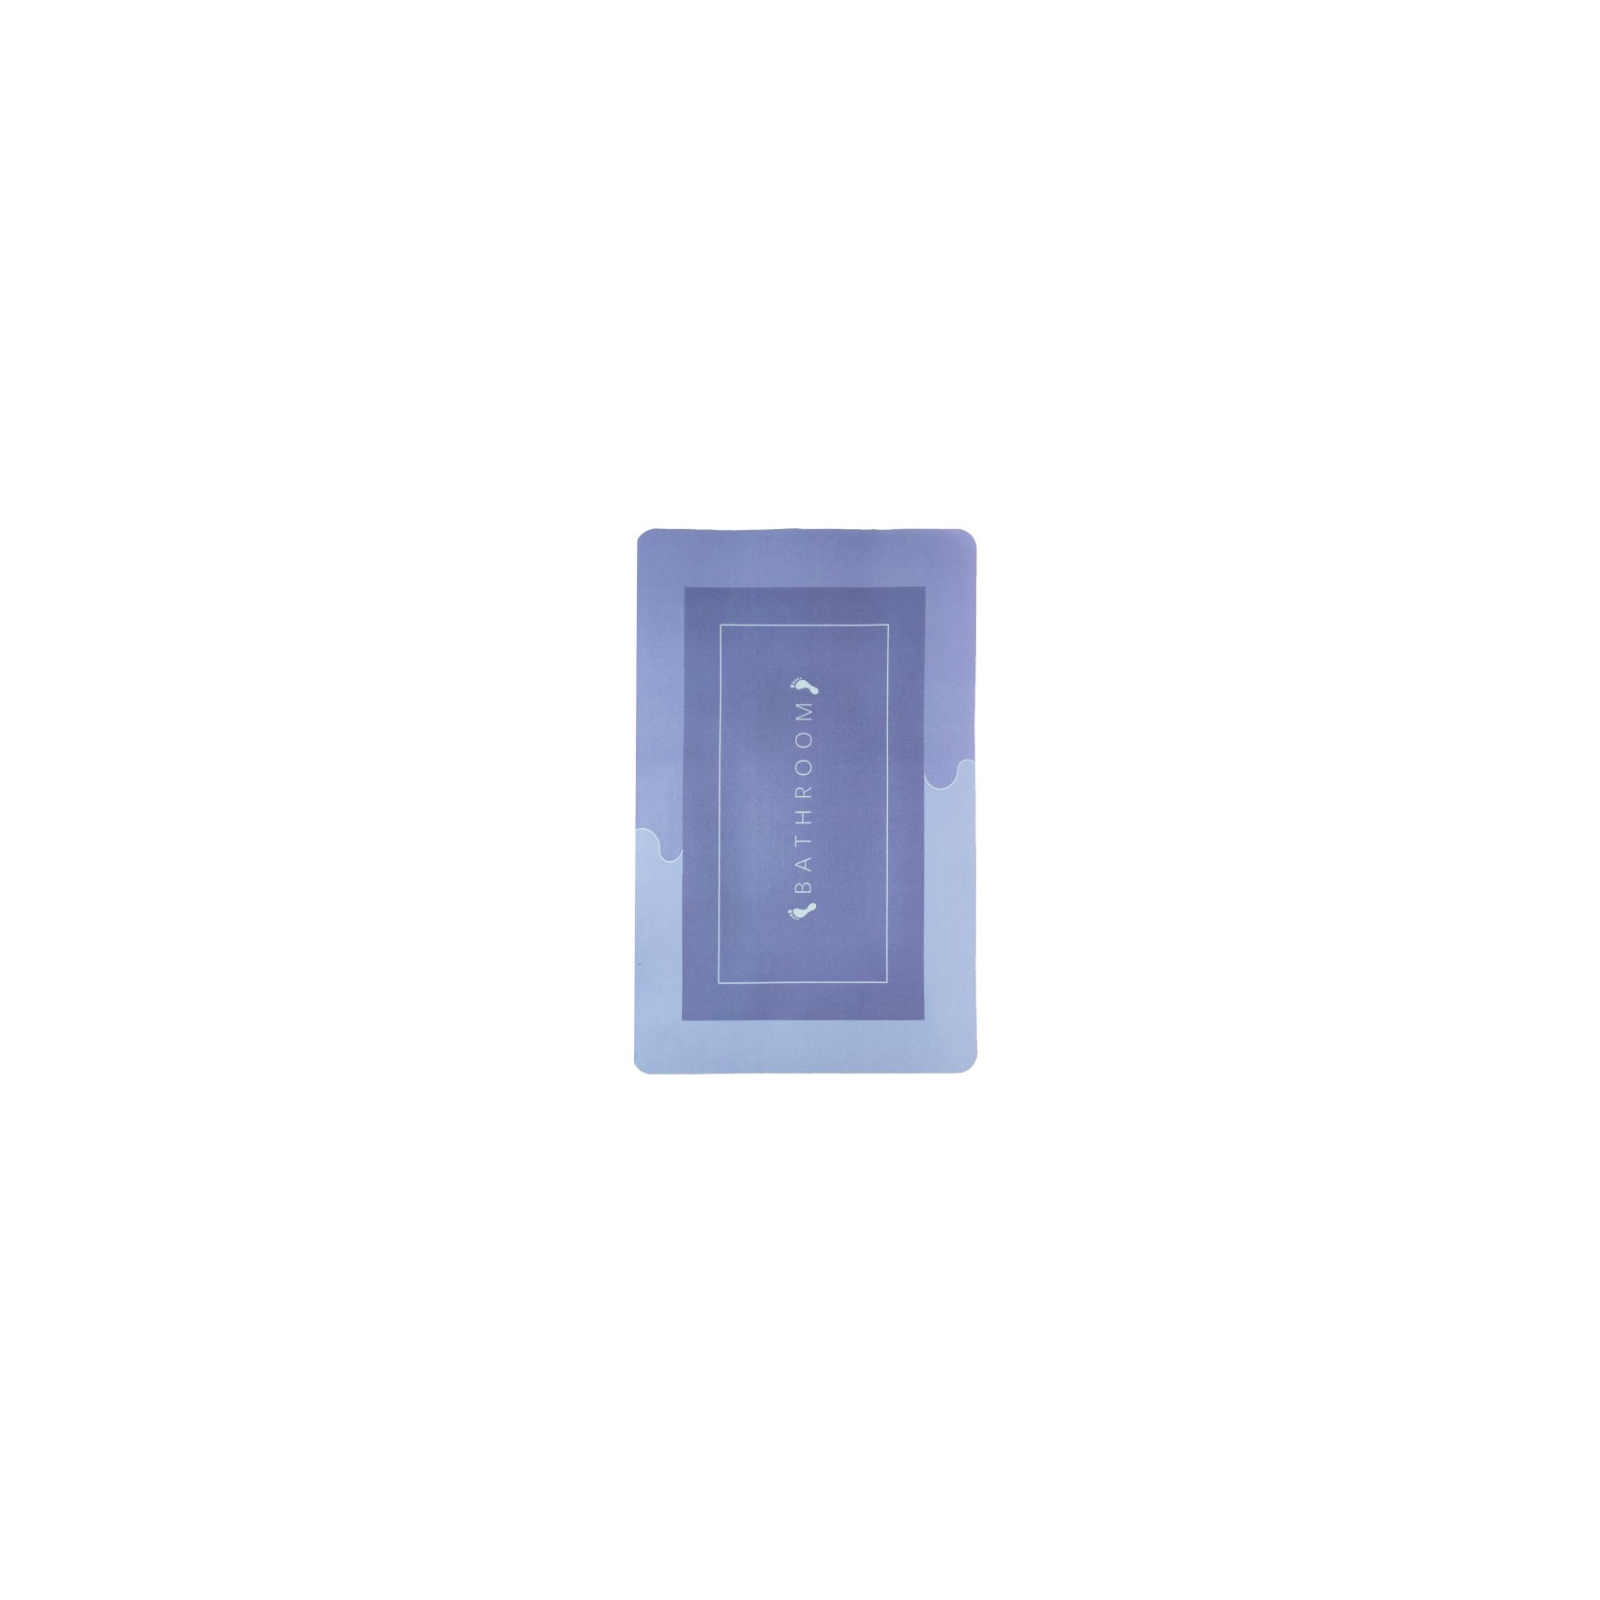 Коврик для ванной Stenson суперпоглощающий 40 х 60 см прямоугольный светло-серый (R30937 l.grey-grey) изображение 2